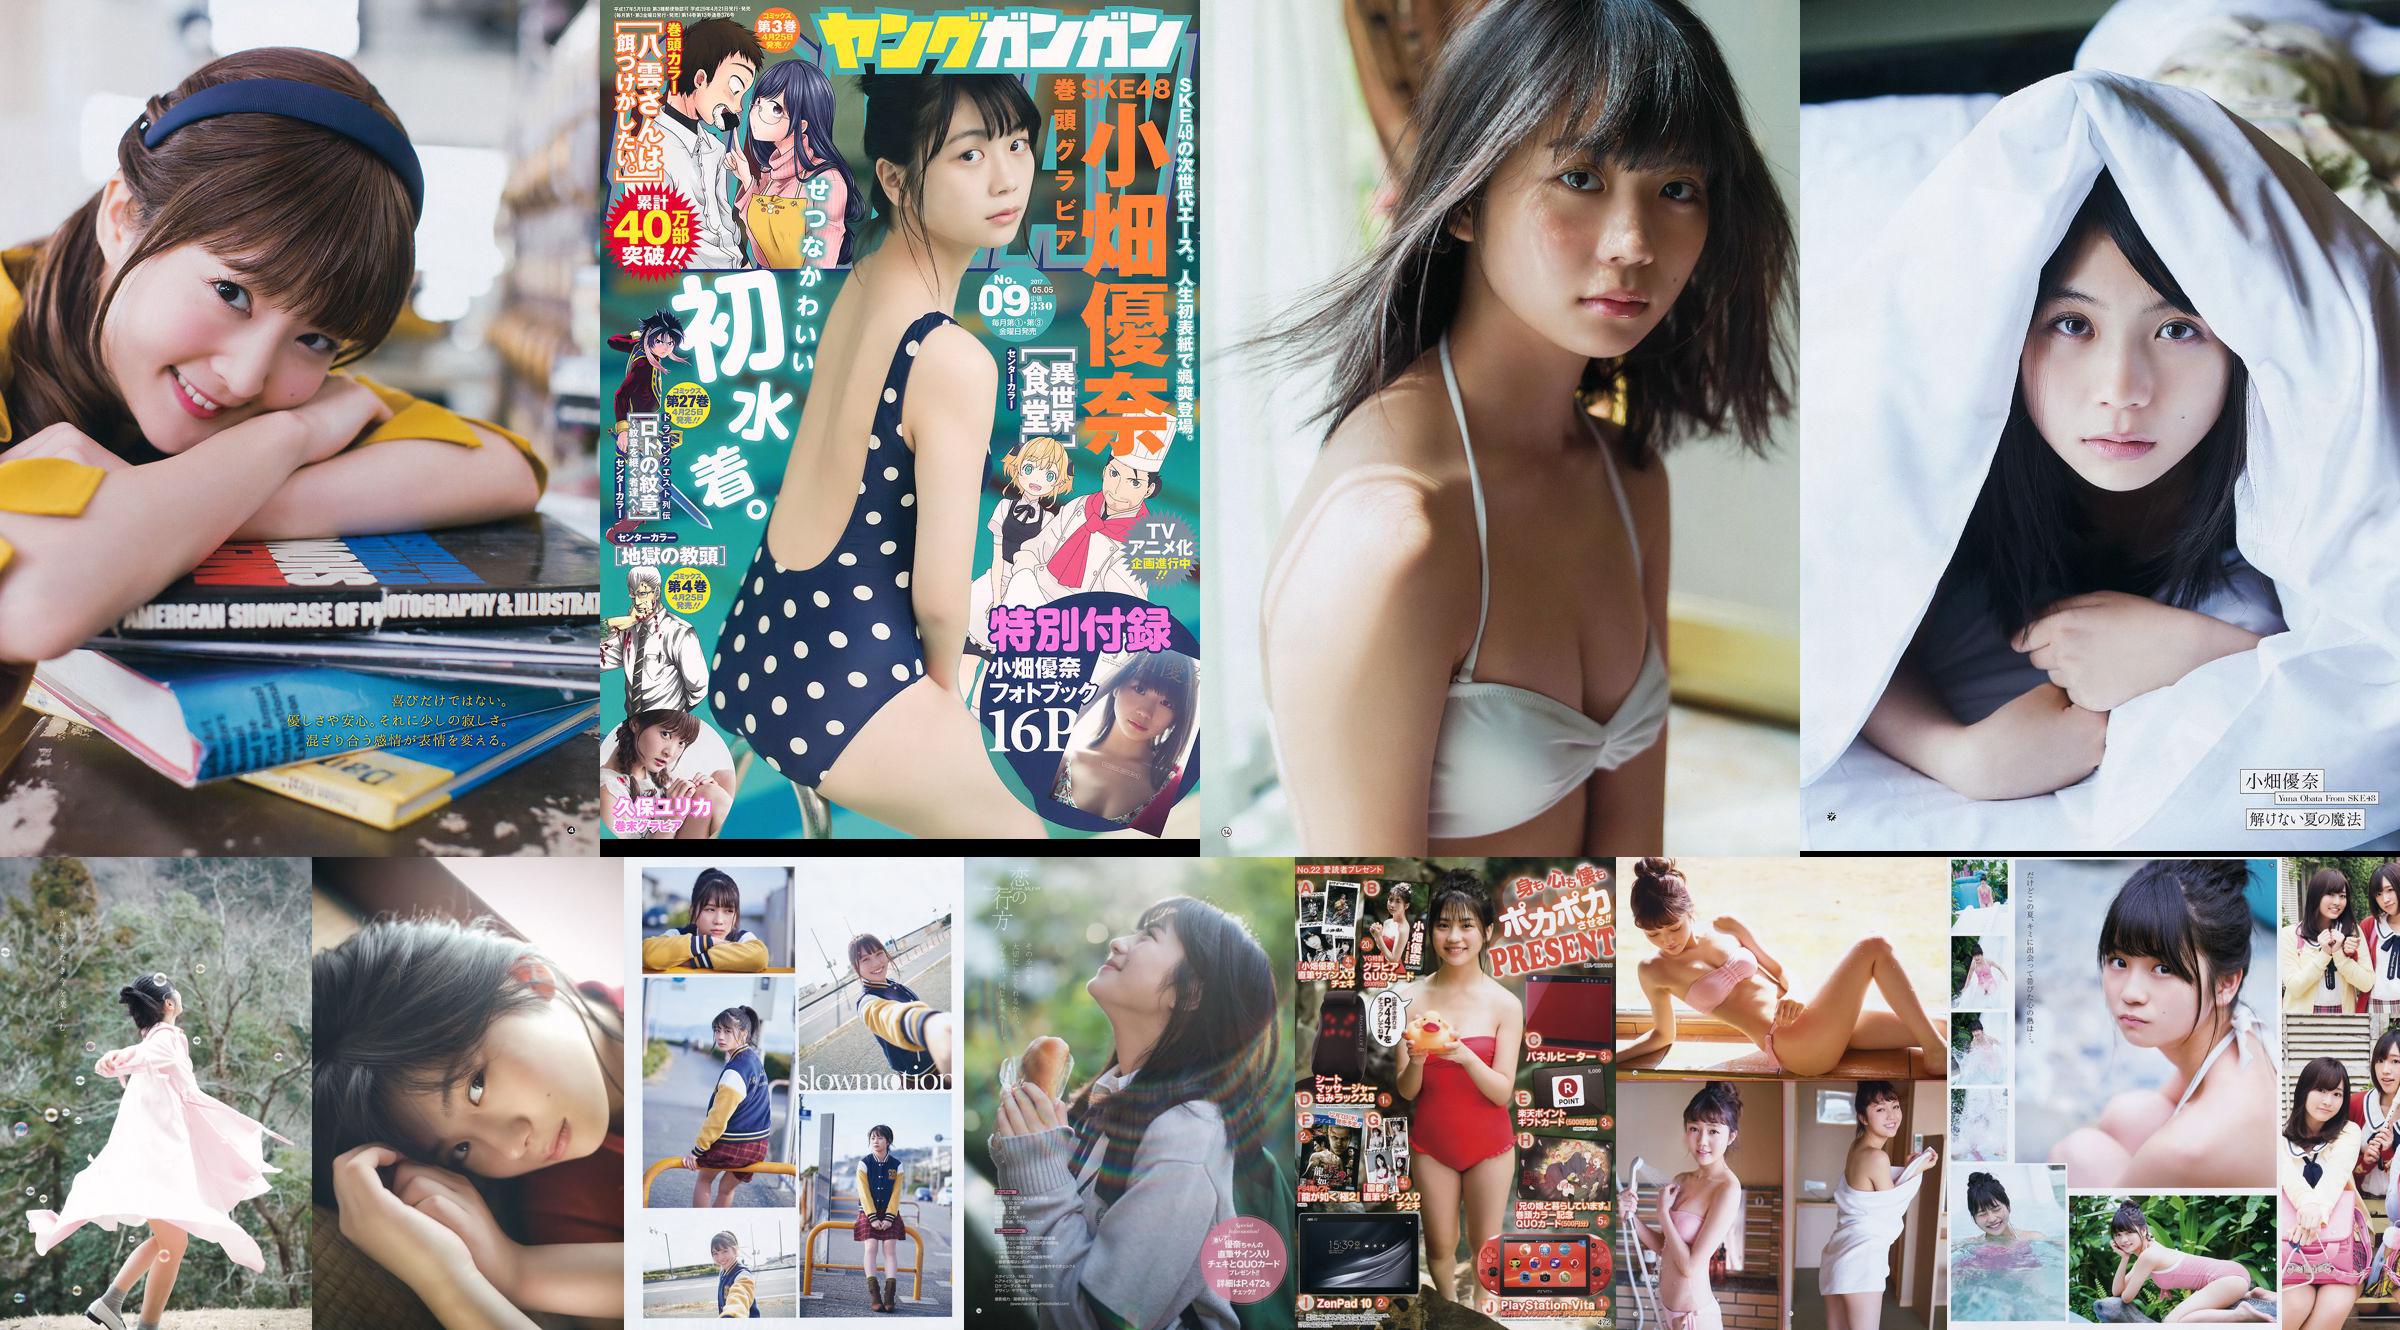 [Young Gangan] Yuna Obata Mina Oba Yume Hayashi 2018 No.12 Photo Magazine No.87e91e Page 4